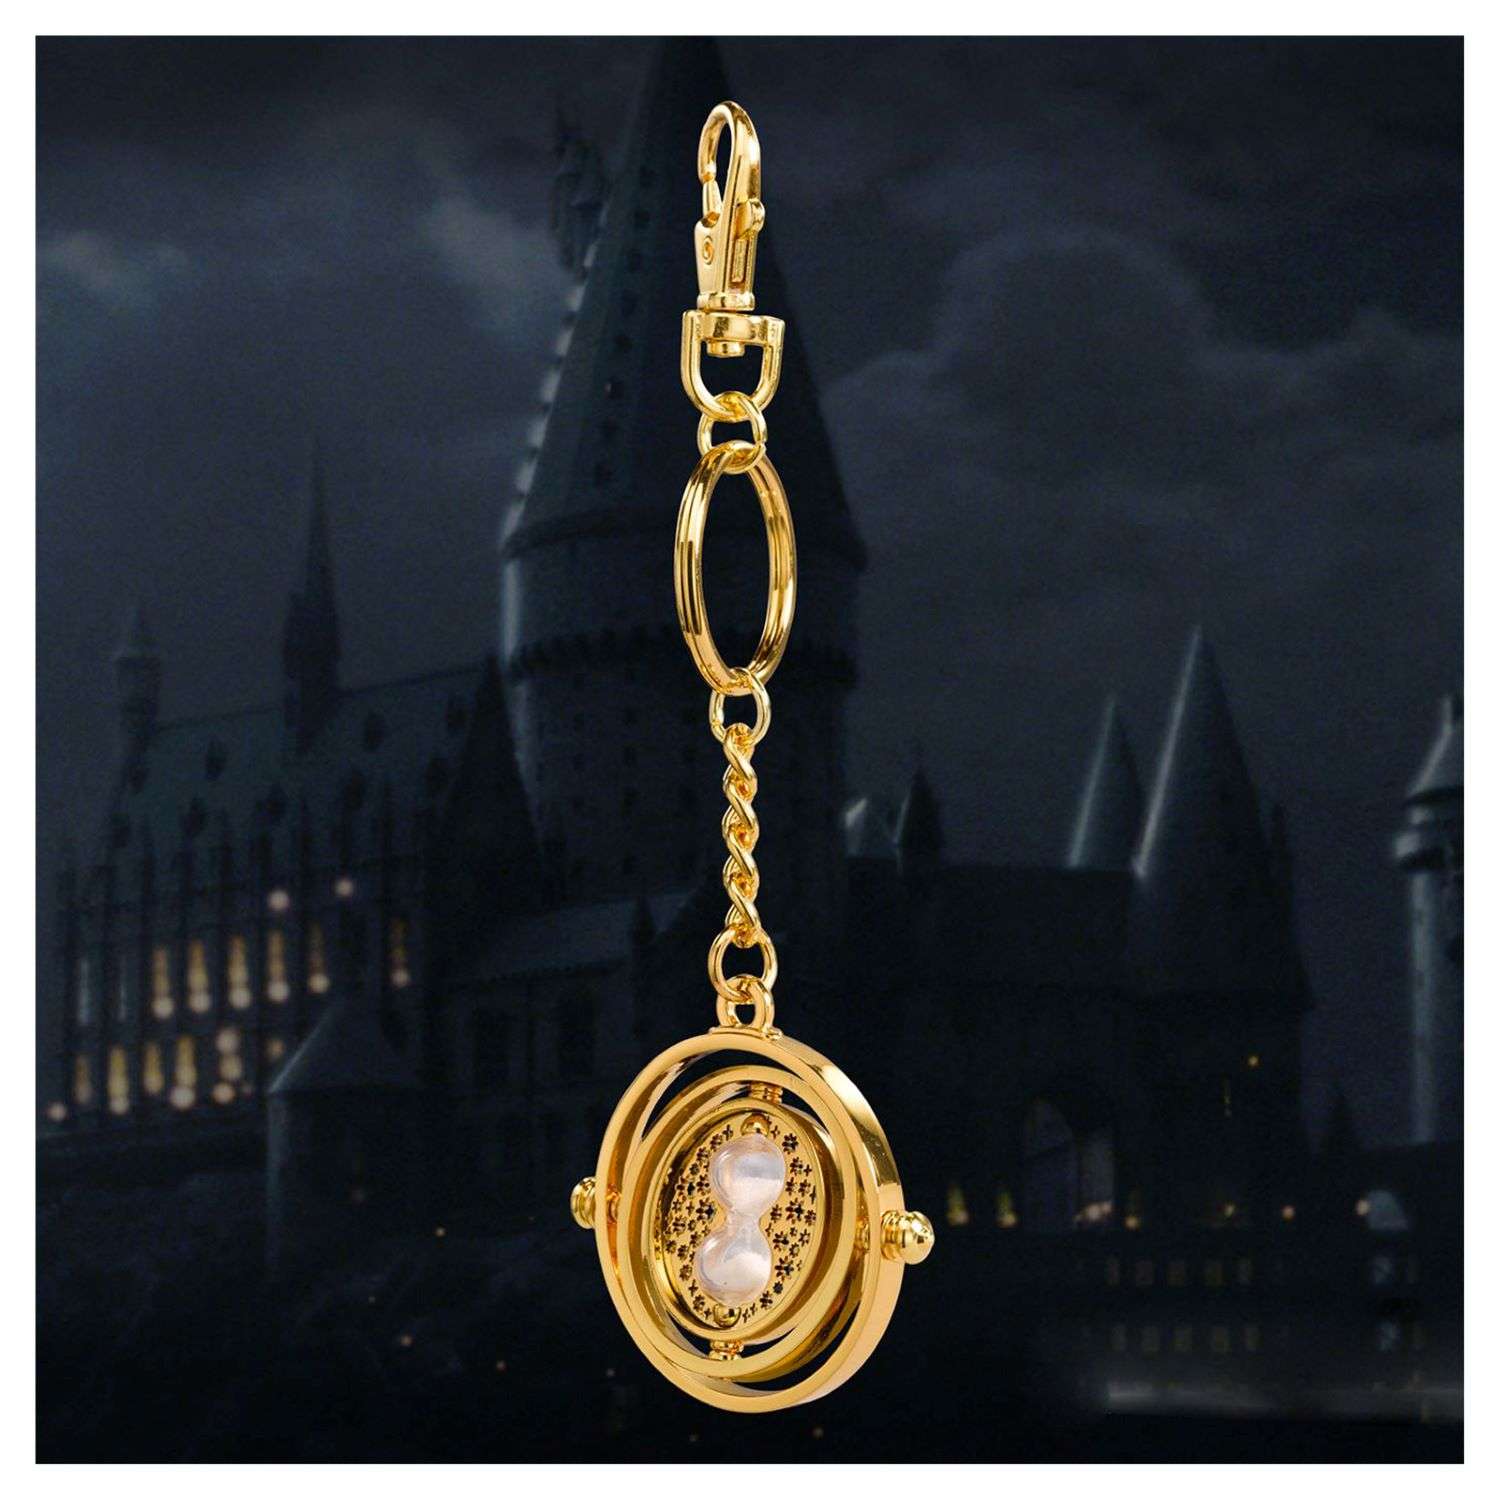 Брелок Harry Potter Маховик времени - фото 3